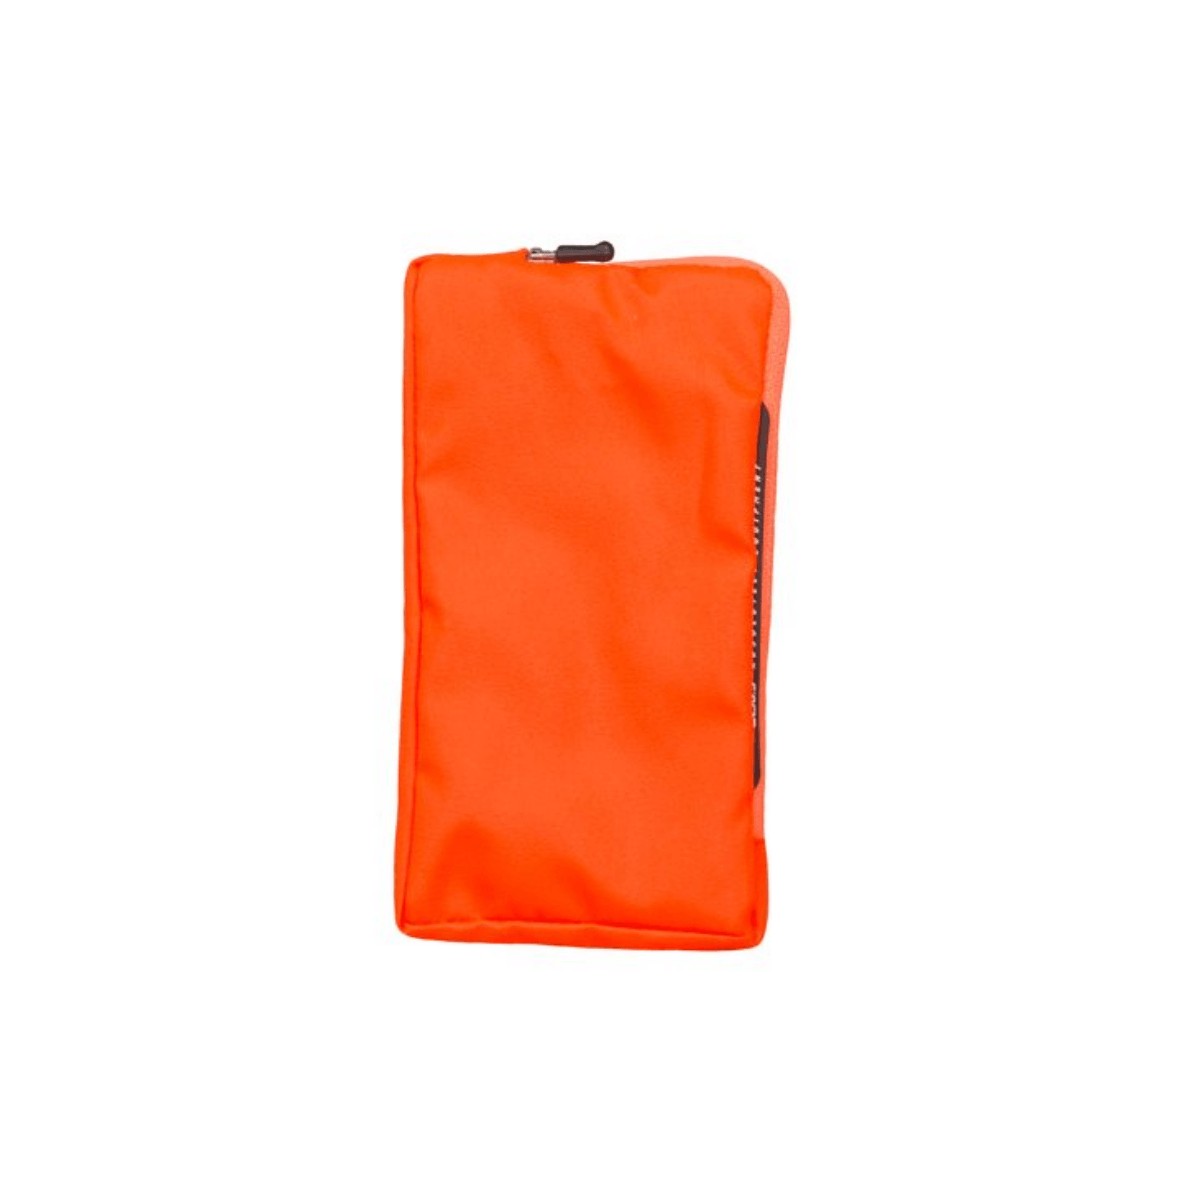 zu 5  günstig Kaufen-Mobiler Halter Q36.5 Smart Protector Orange. Mobiler Halter Q36.5 Smart Protector Orange <![CDATA[Mobiler Halter Q36.5 Smart Protector Orange Eine große Besessenheit mit einem kleinen Problem: die perfekte Smartphone-Hülle zum Radfahren. Q36.5 nimmt die